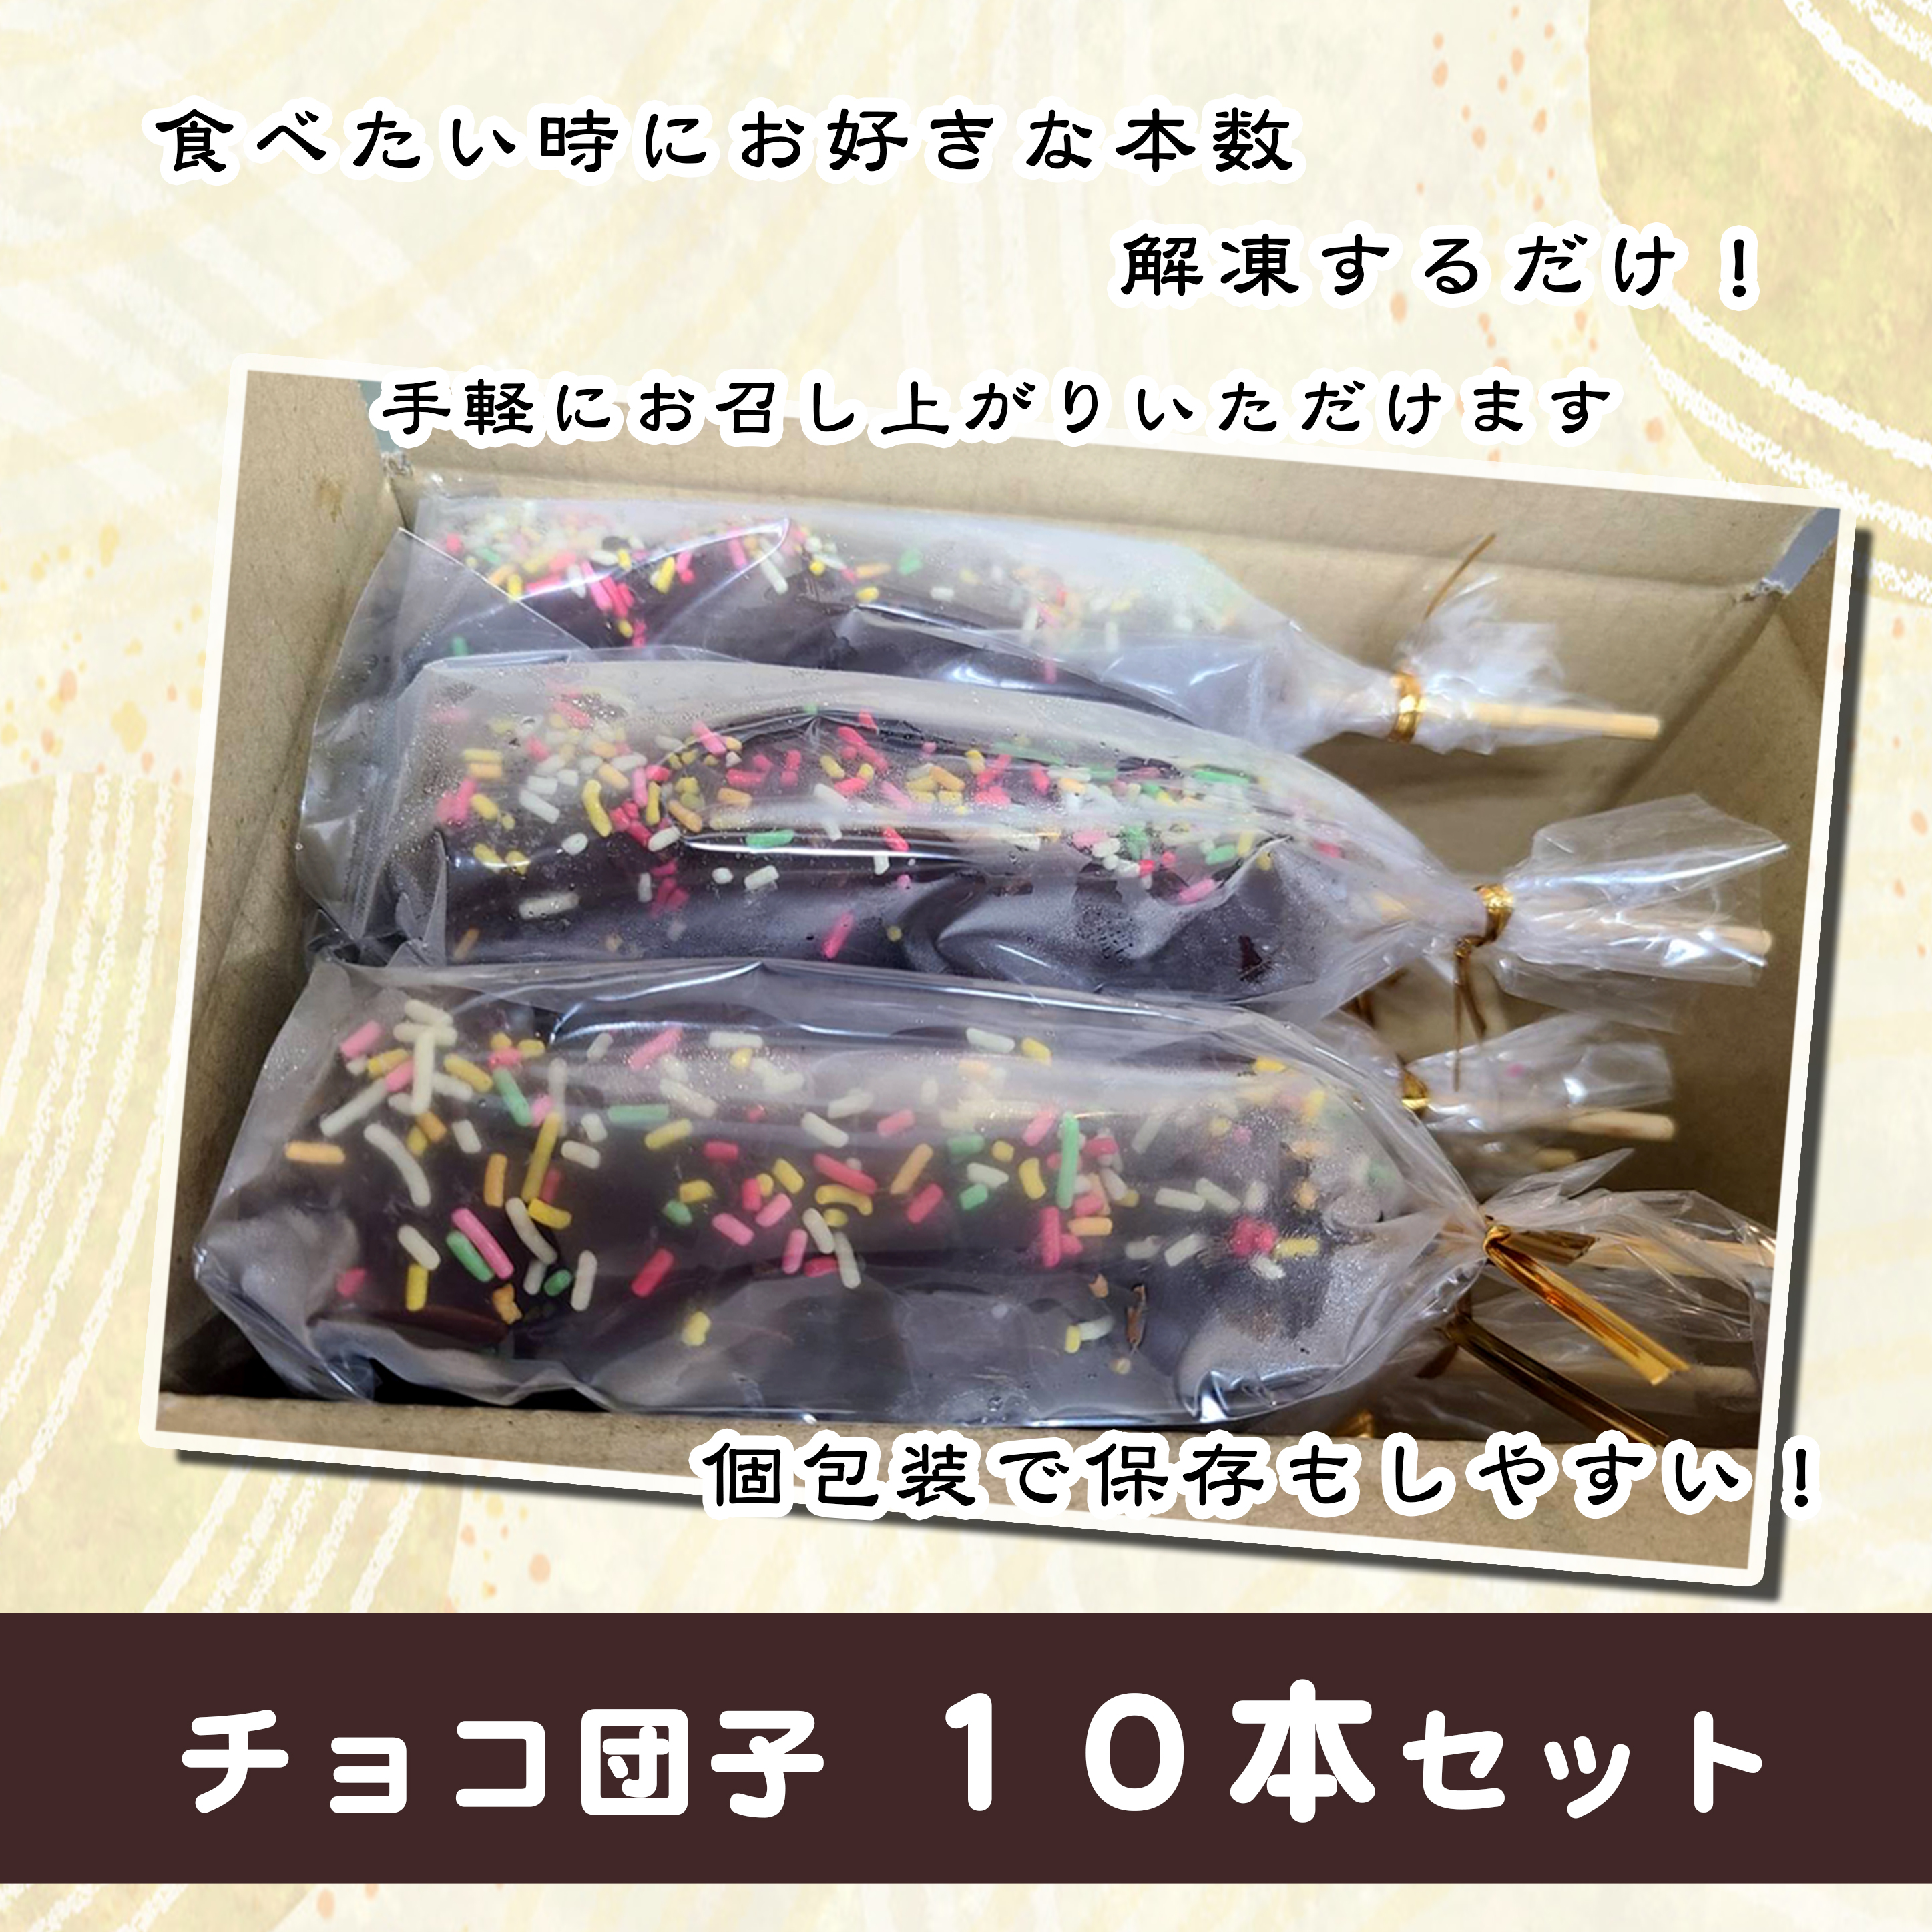 ジャンボチョコ団子10本セット(冷凍)・F023-14